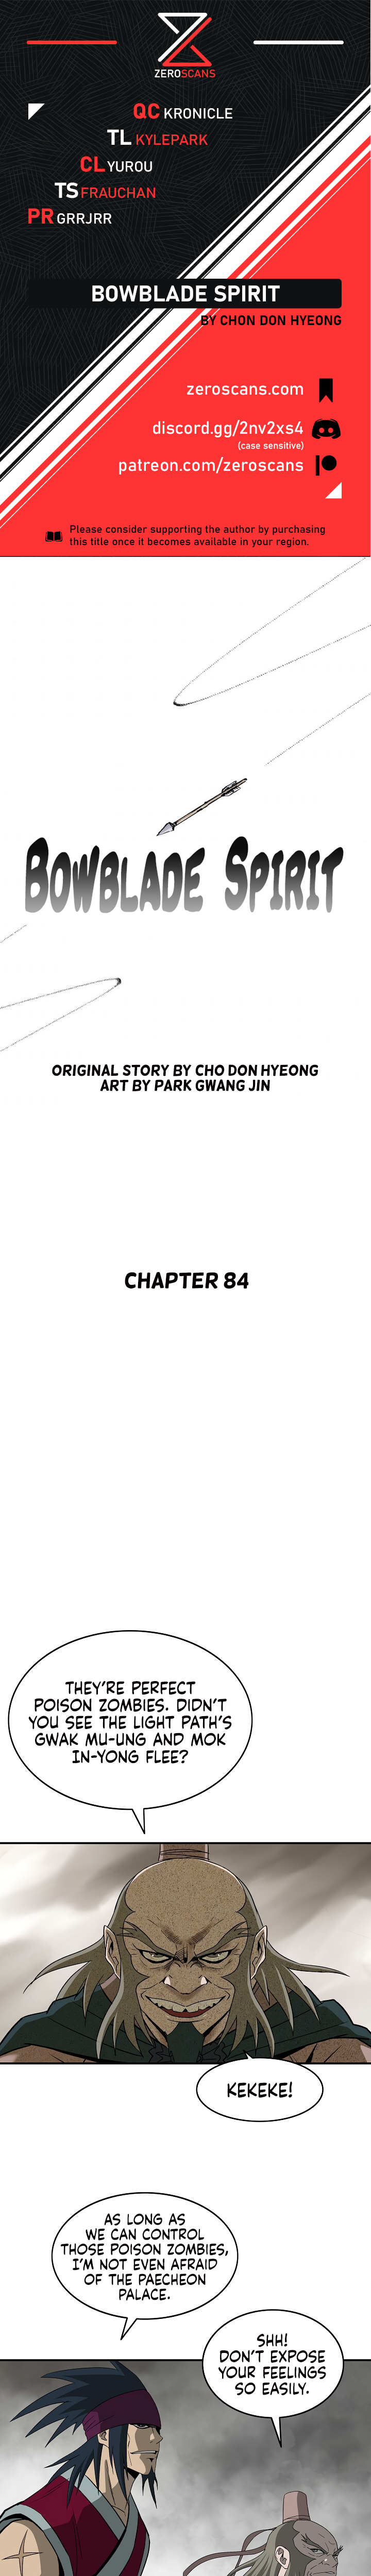 Bowblade Spirit - Chapter 7915 - Image 1